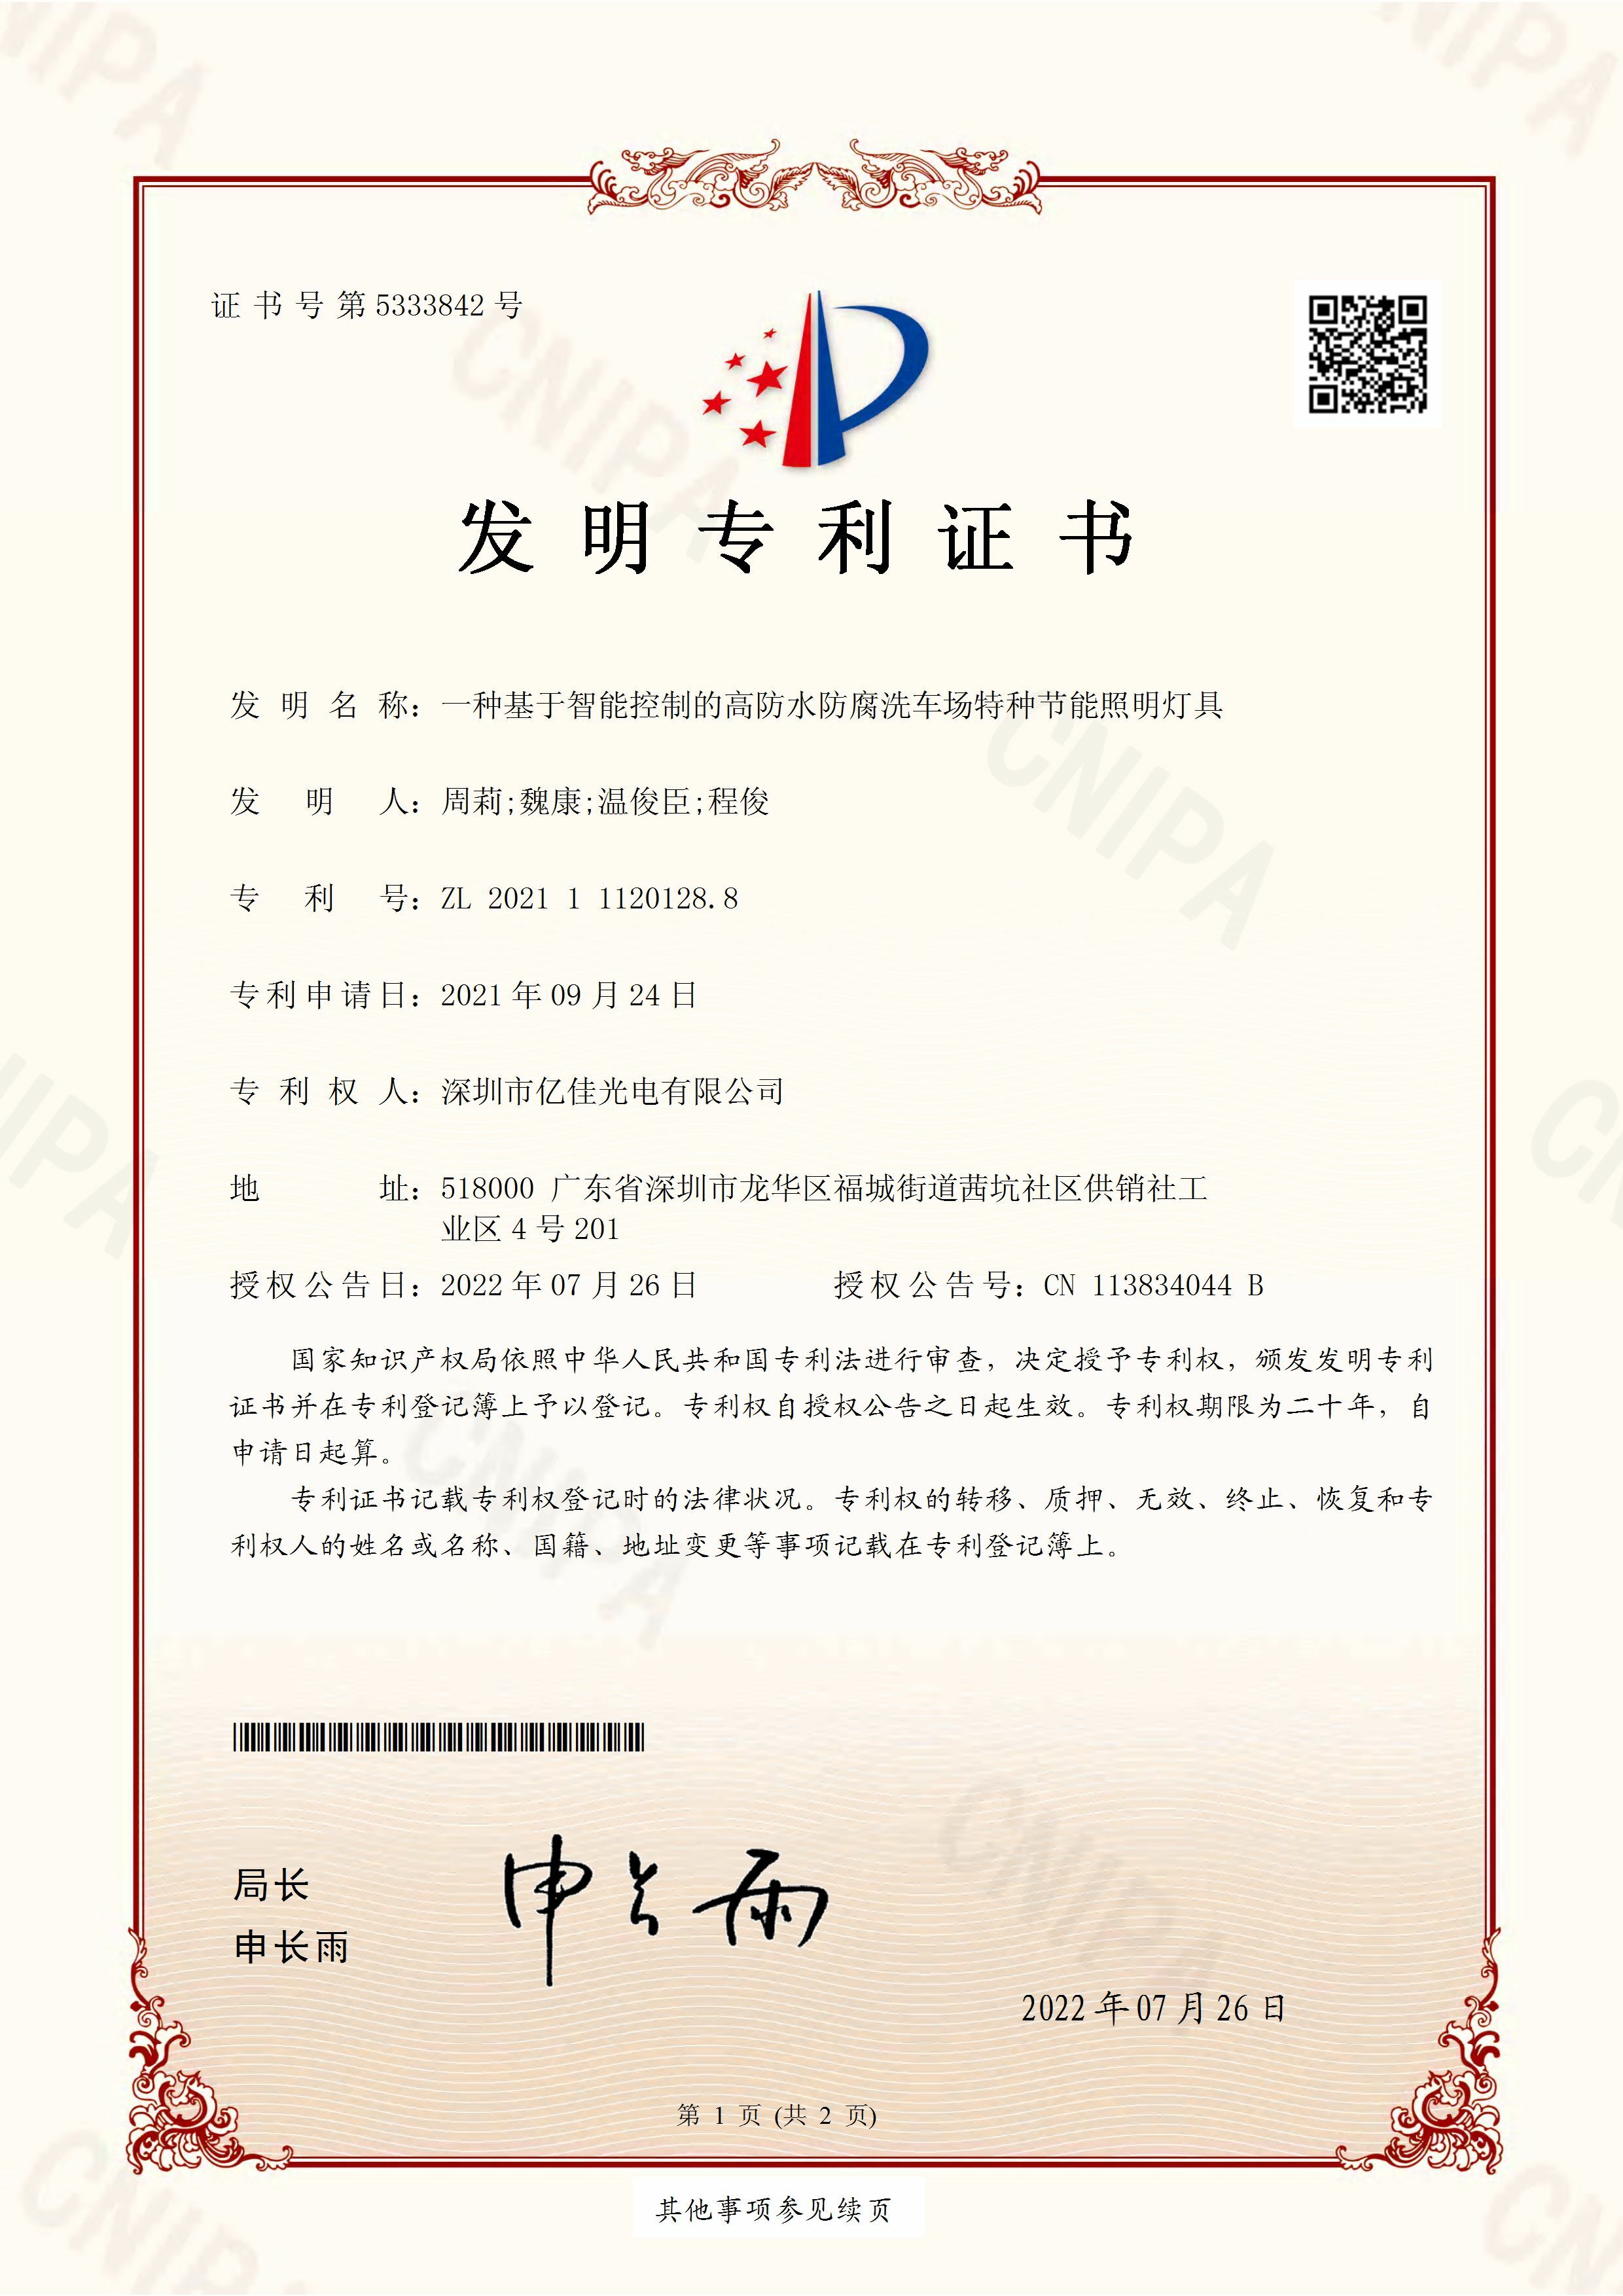 深圳市k8凯发k8凯发有限公司洗车场节能照明灯发明专利申请获得通过